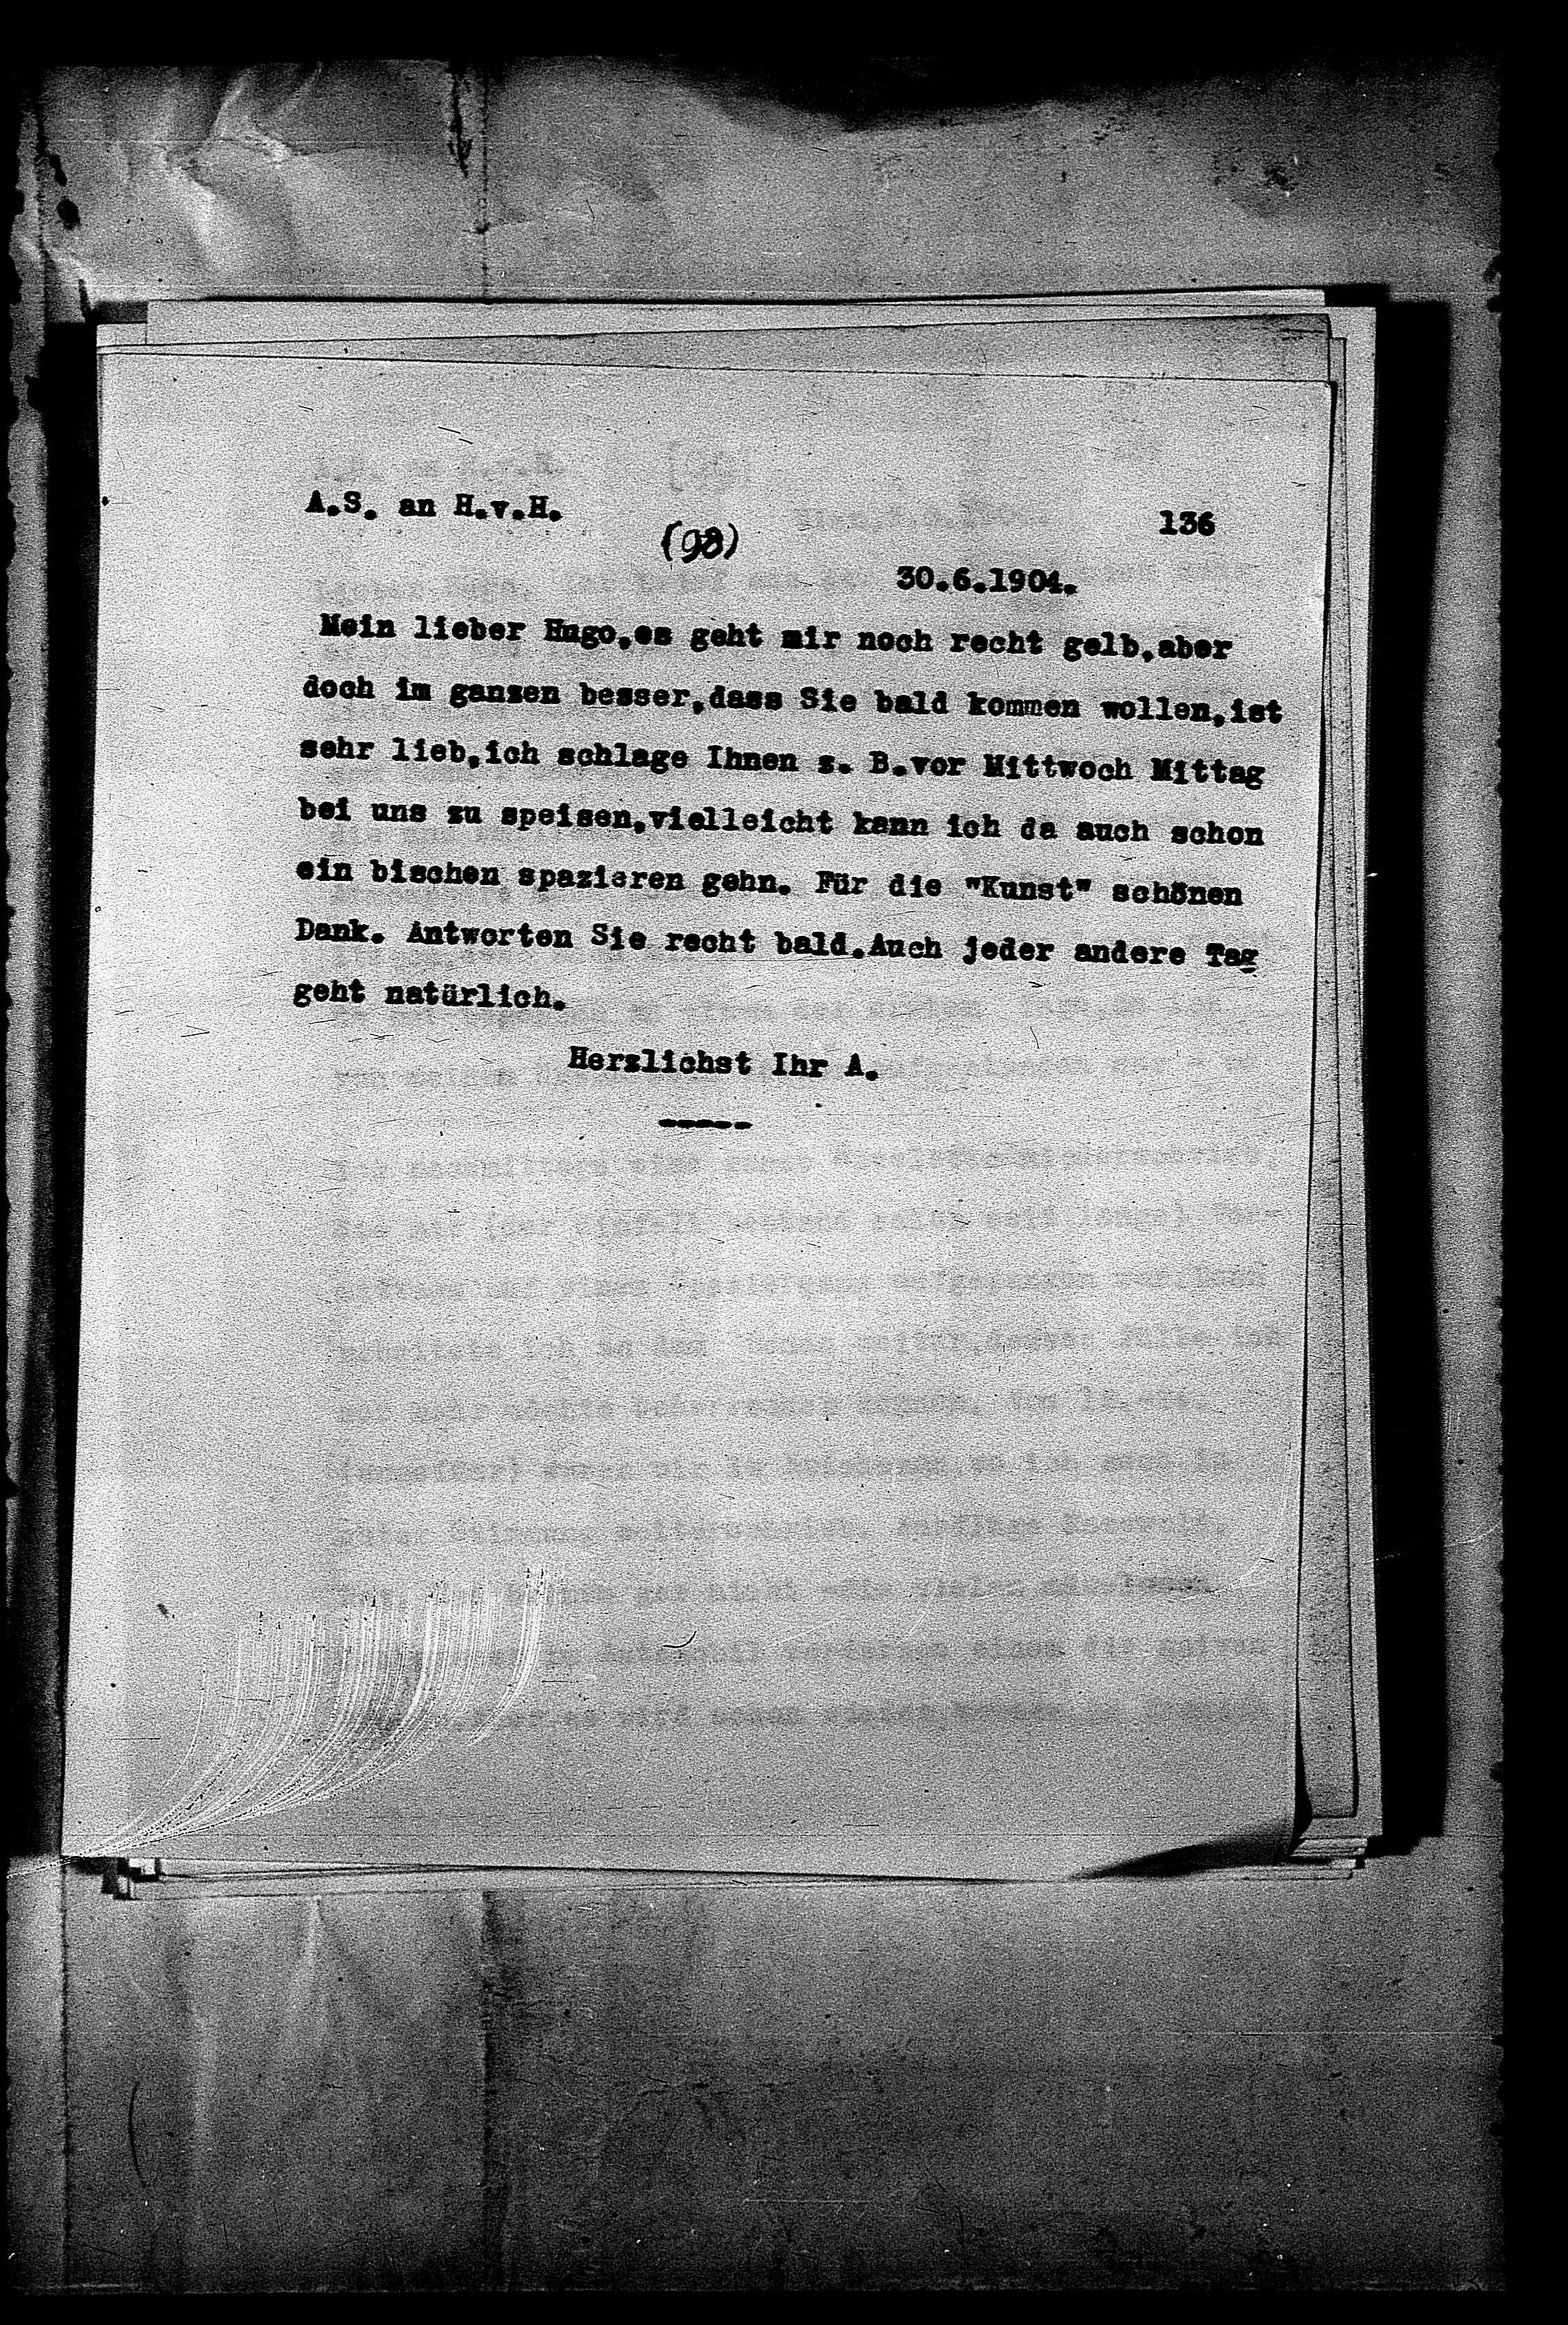 Vorschaubild für Hofmannsthal, Hugo von_AS an HvH Abschrift, HvH an AS, Originale (Mikrofilm 38), Seite 142